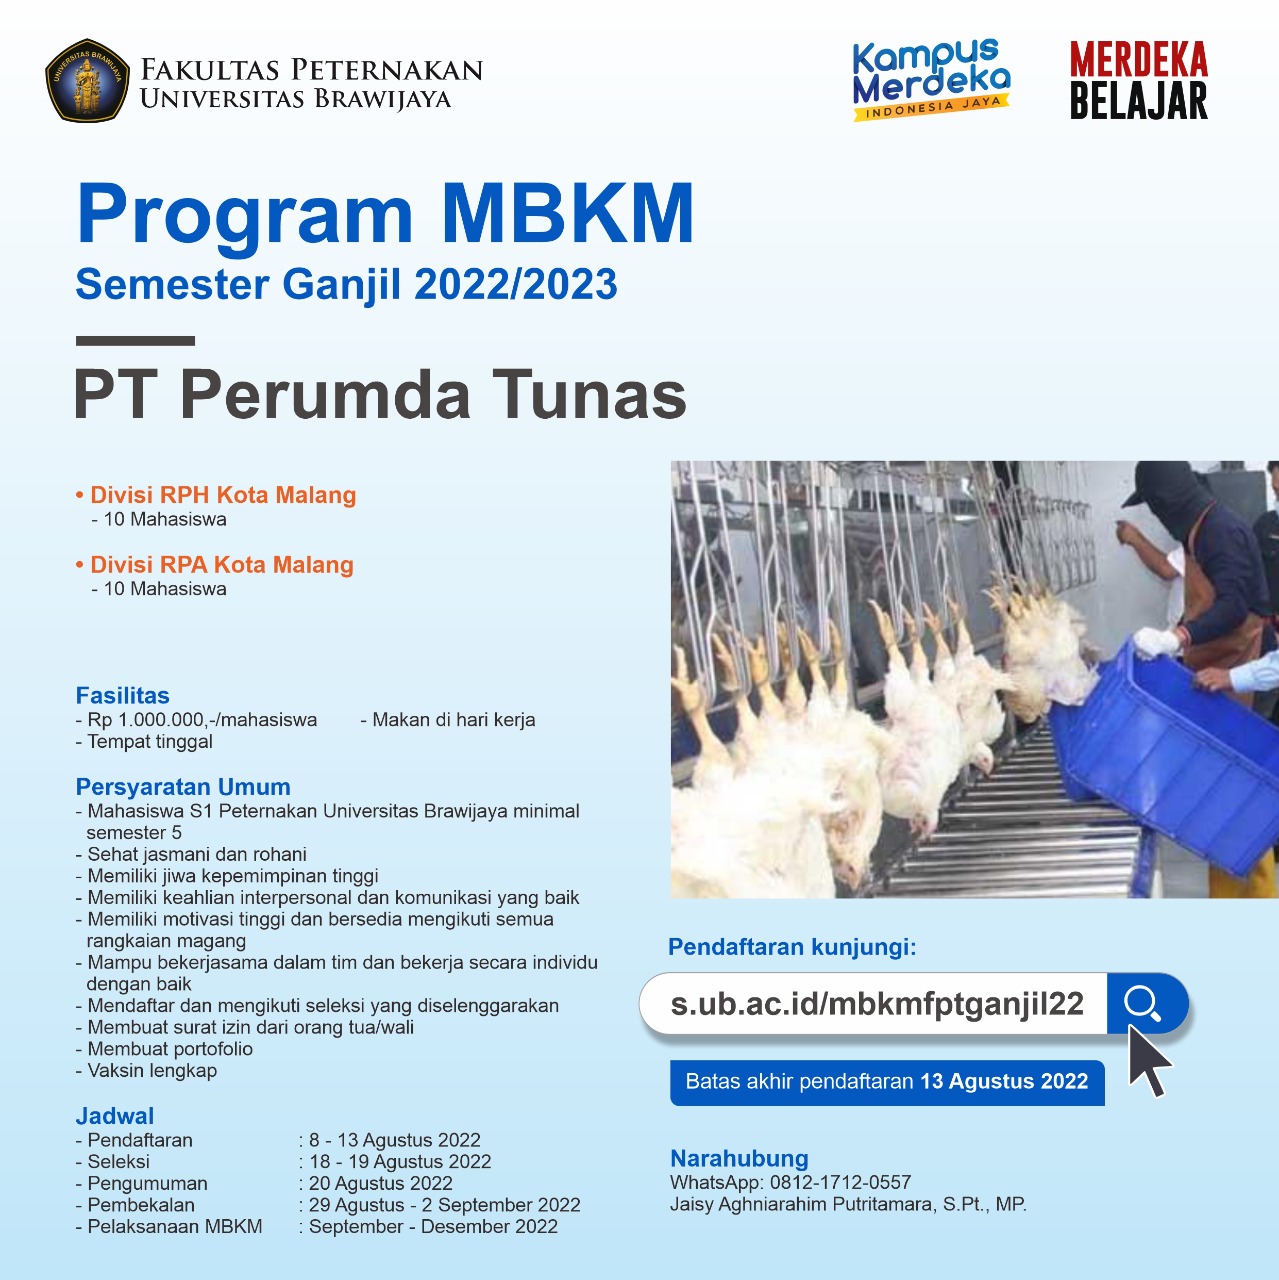 Program MBKM Semester Ganjil 2022/2023 PT. Perumda Tunas